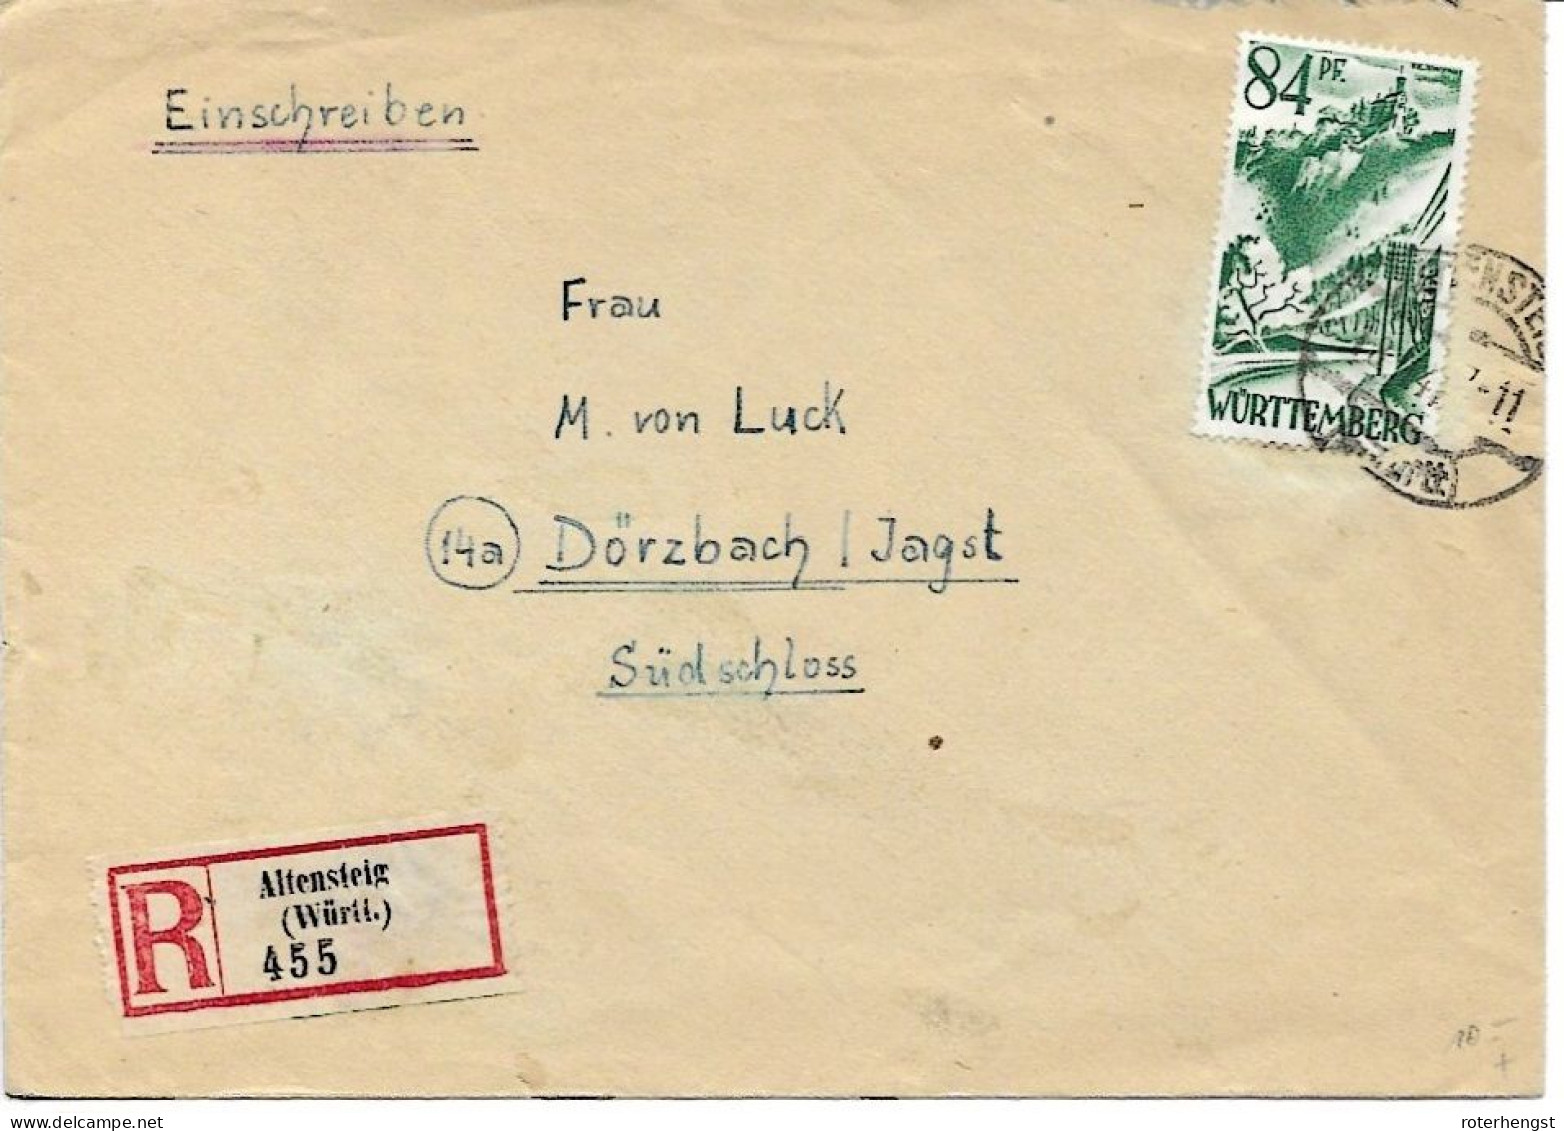 Württemberg Letter From Altensteig 1947 - Württemberg